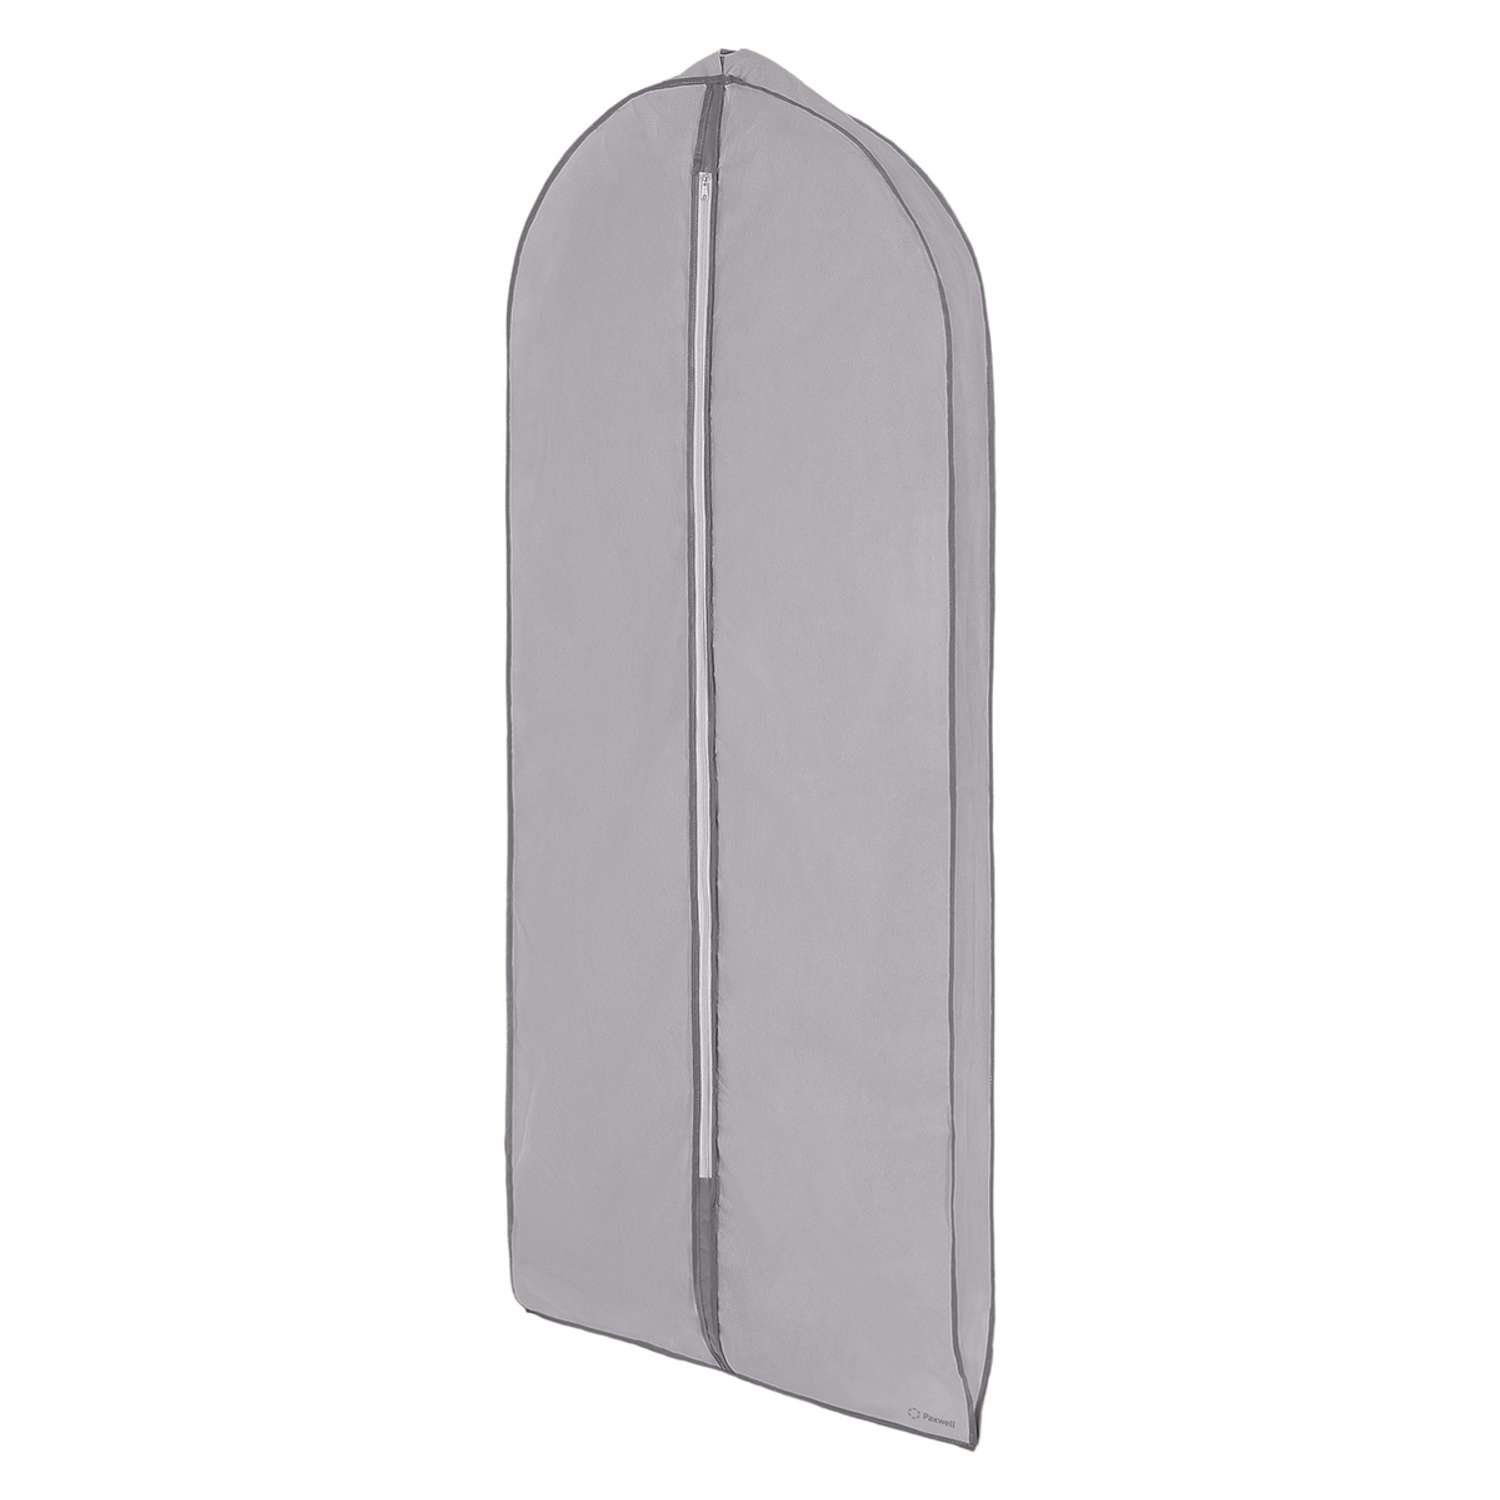 Чехол для широкой одежды Paxwell 140 см серый - фото 1